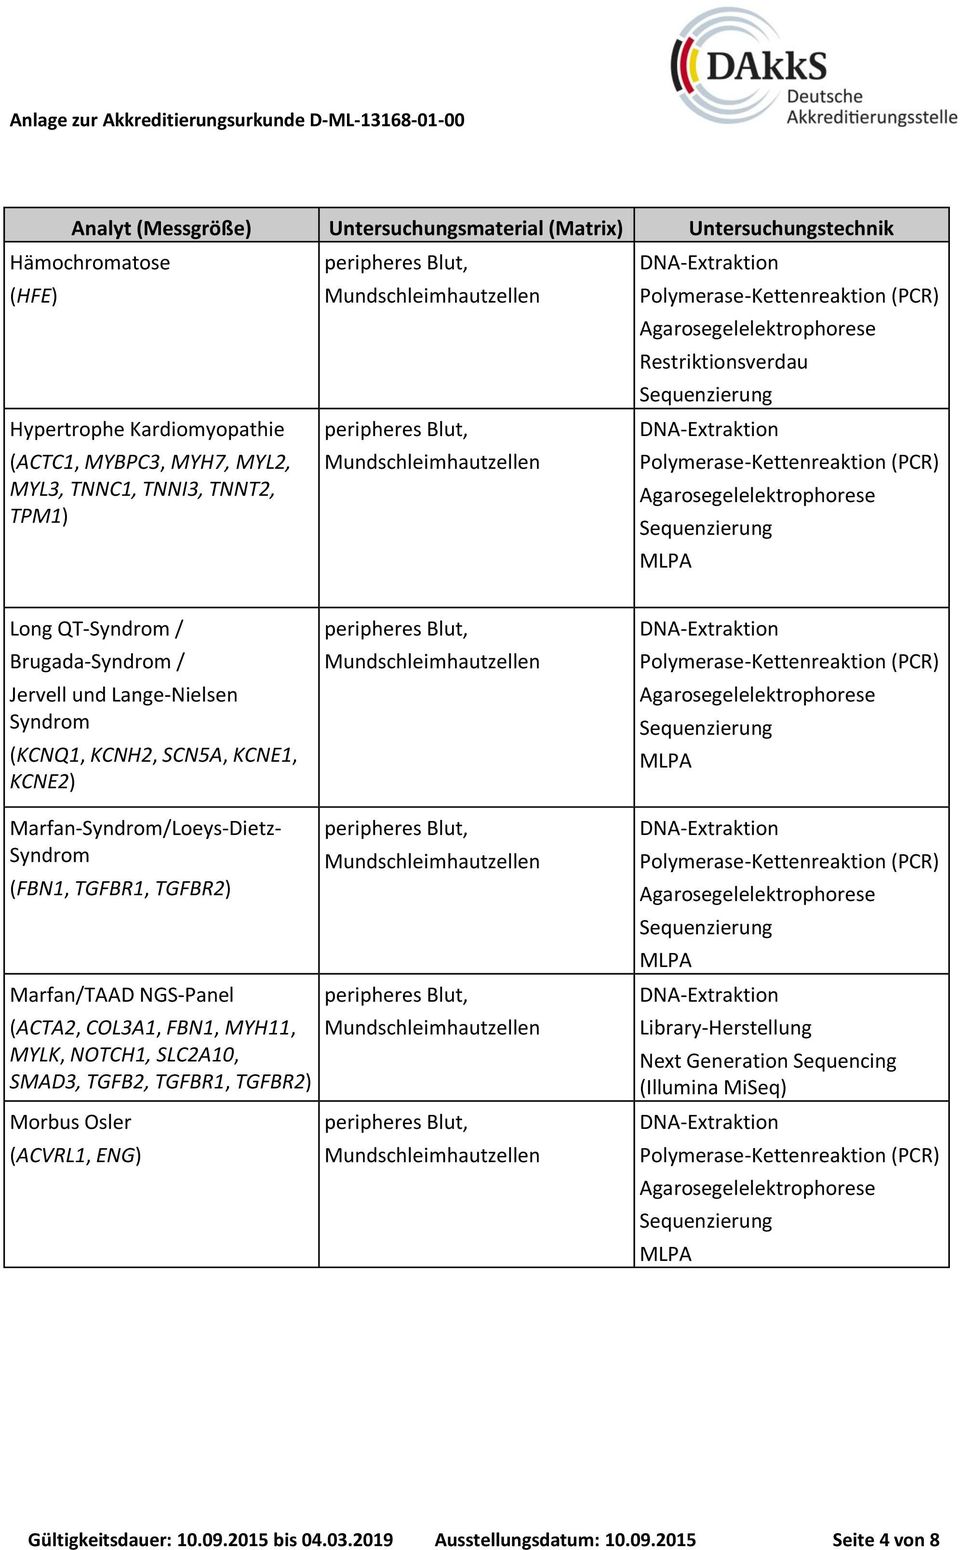 TGFBR1, TGFBR2) Marfan/TAAD NGS-Panel (ACTA2, COL3A1, FBN1, MYH11, MYLK, NOTCH1, SLC2A10, SMAD3, TGFB2, TGFBR1, TGFBR2) Morbus Osler (ACVRL1,